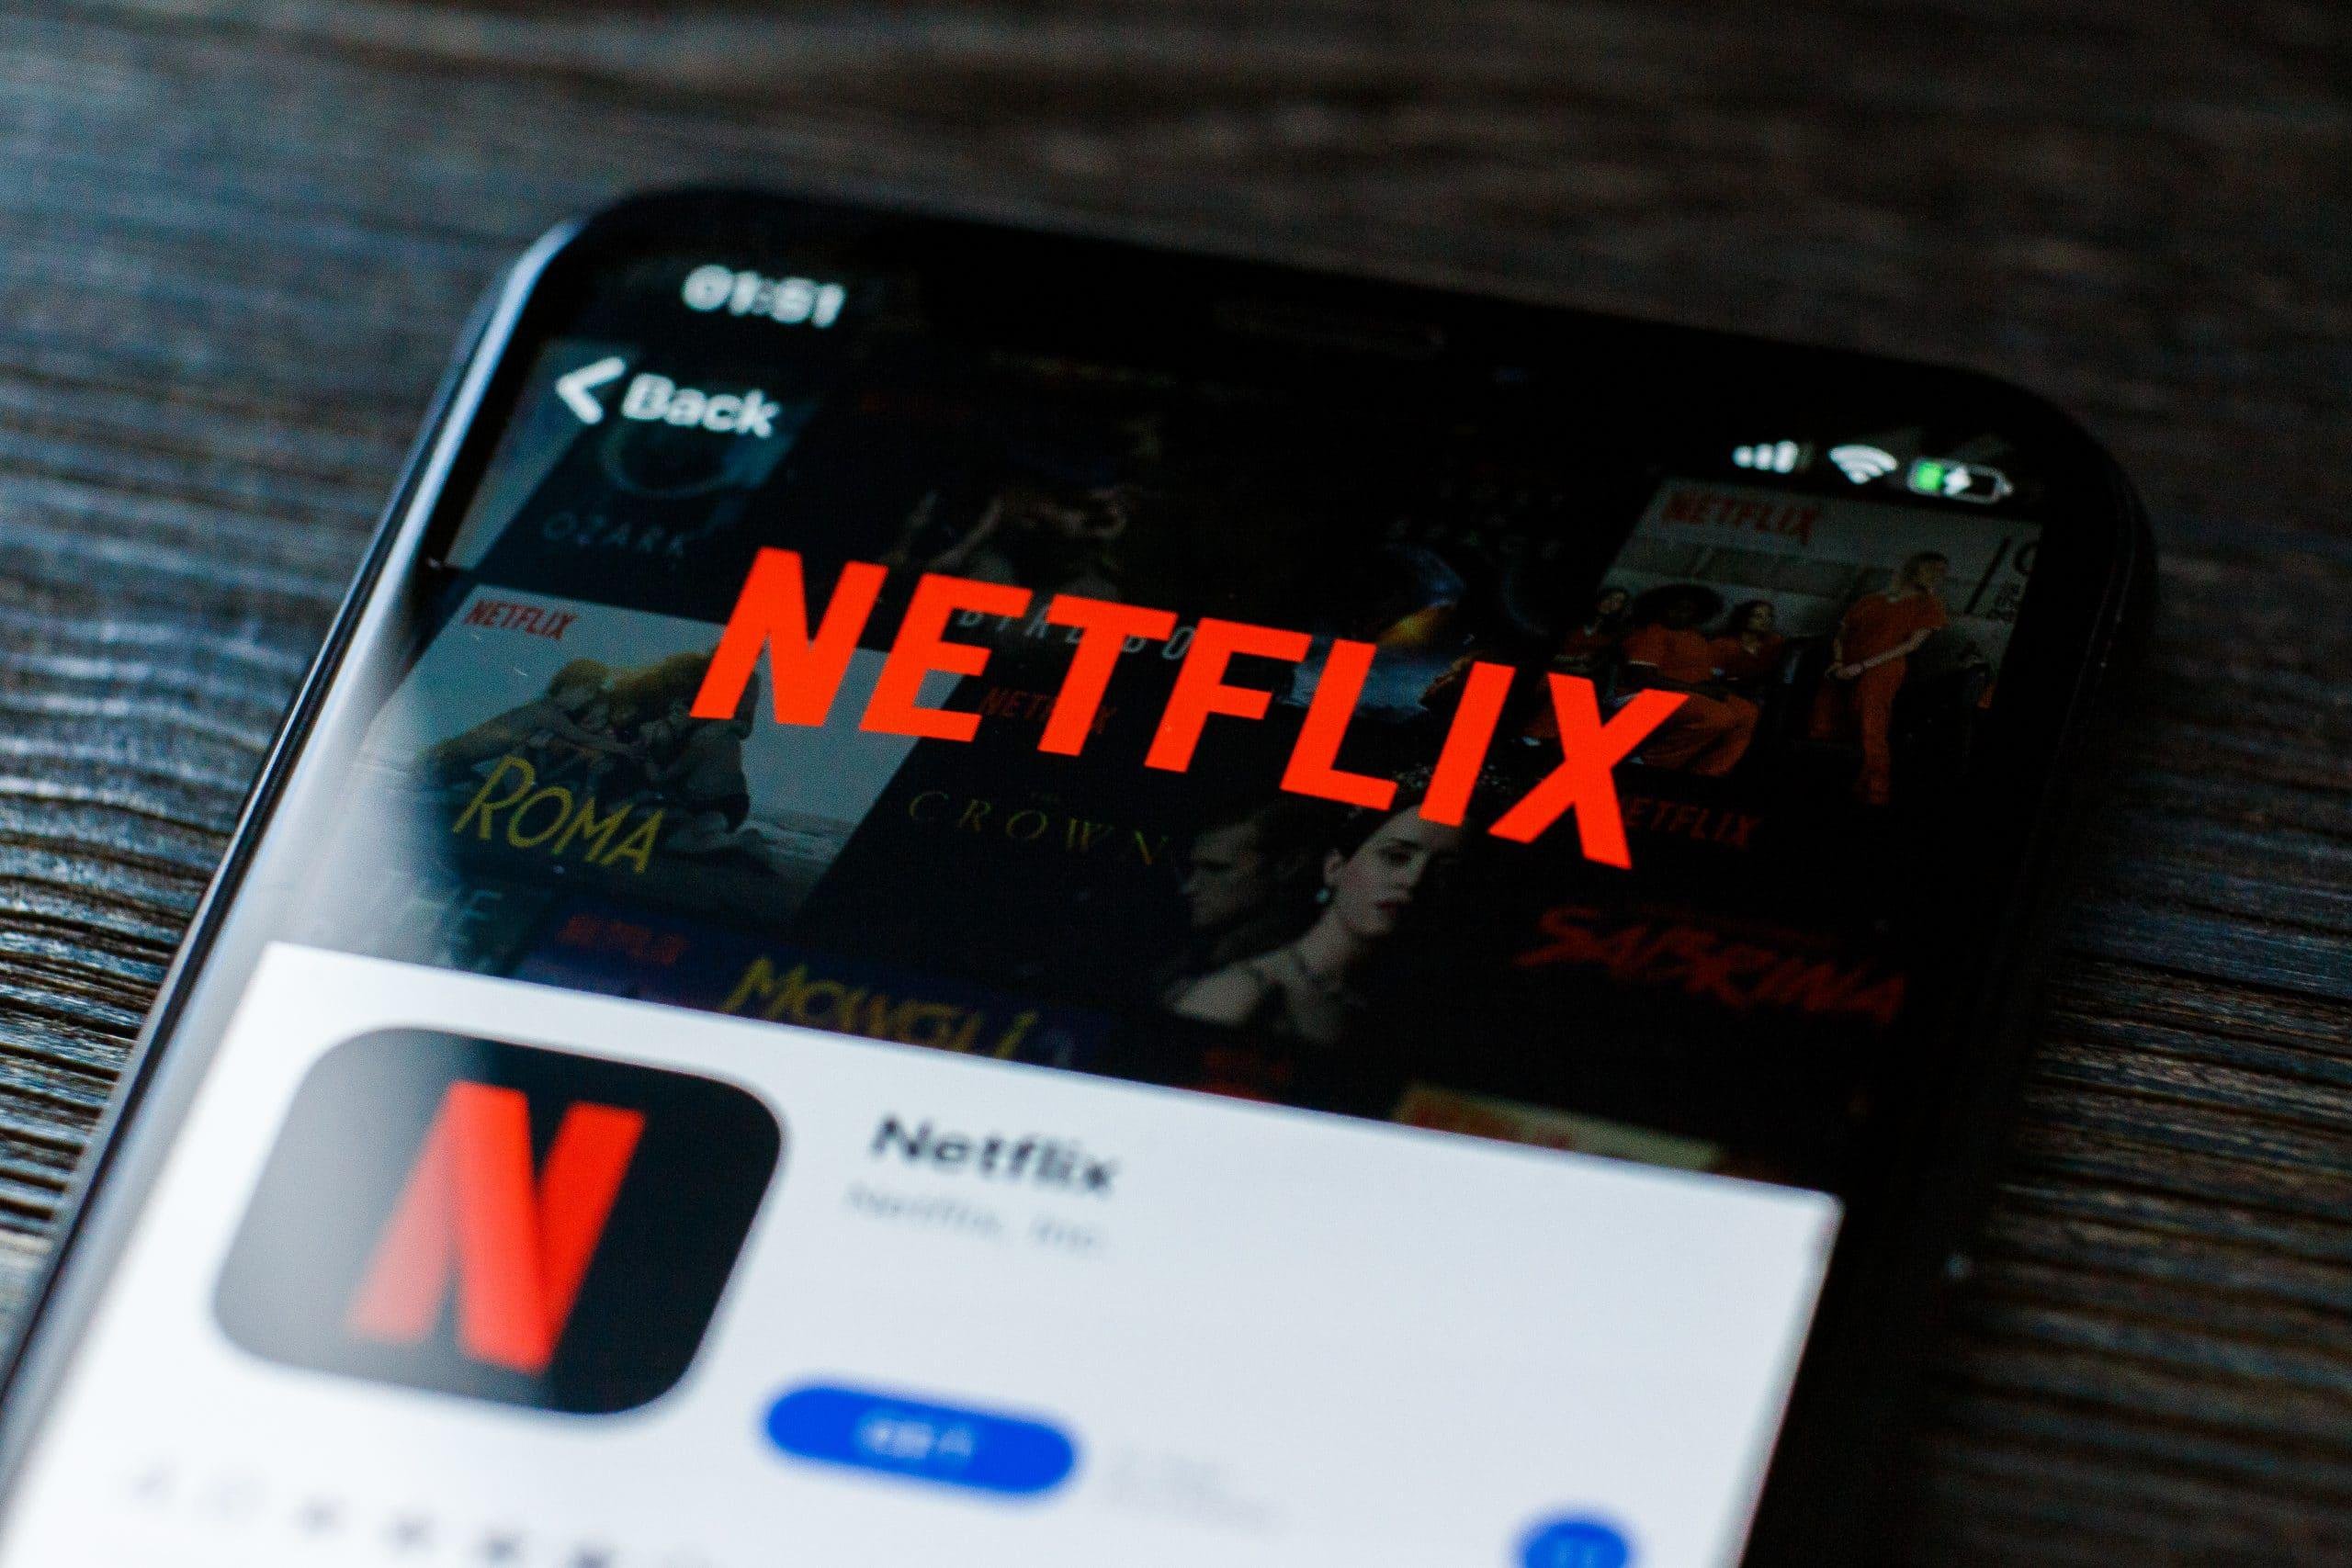 Mensagem da Netflix: Esta TV não faz parte da sua residência Netflix